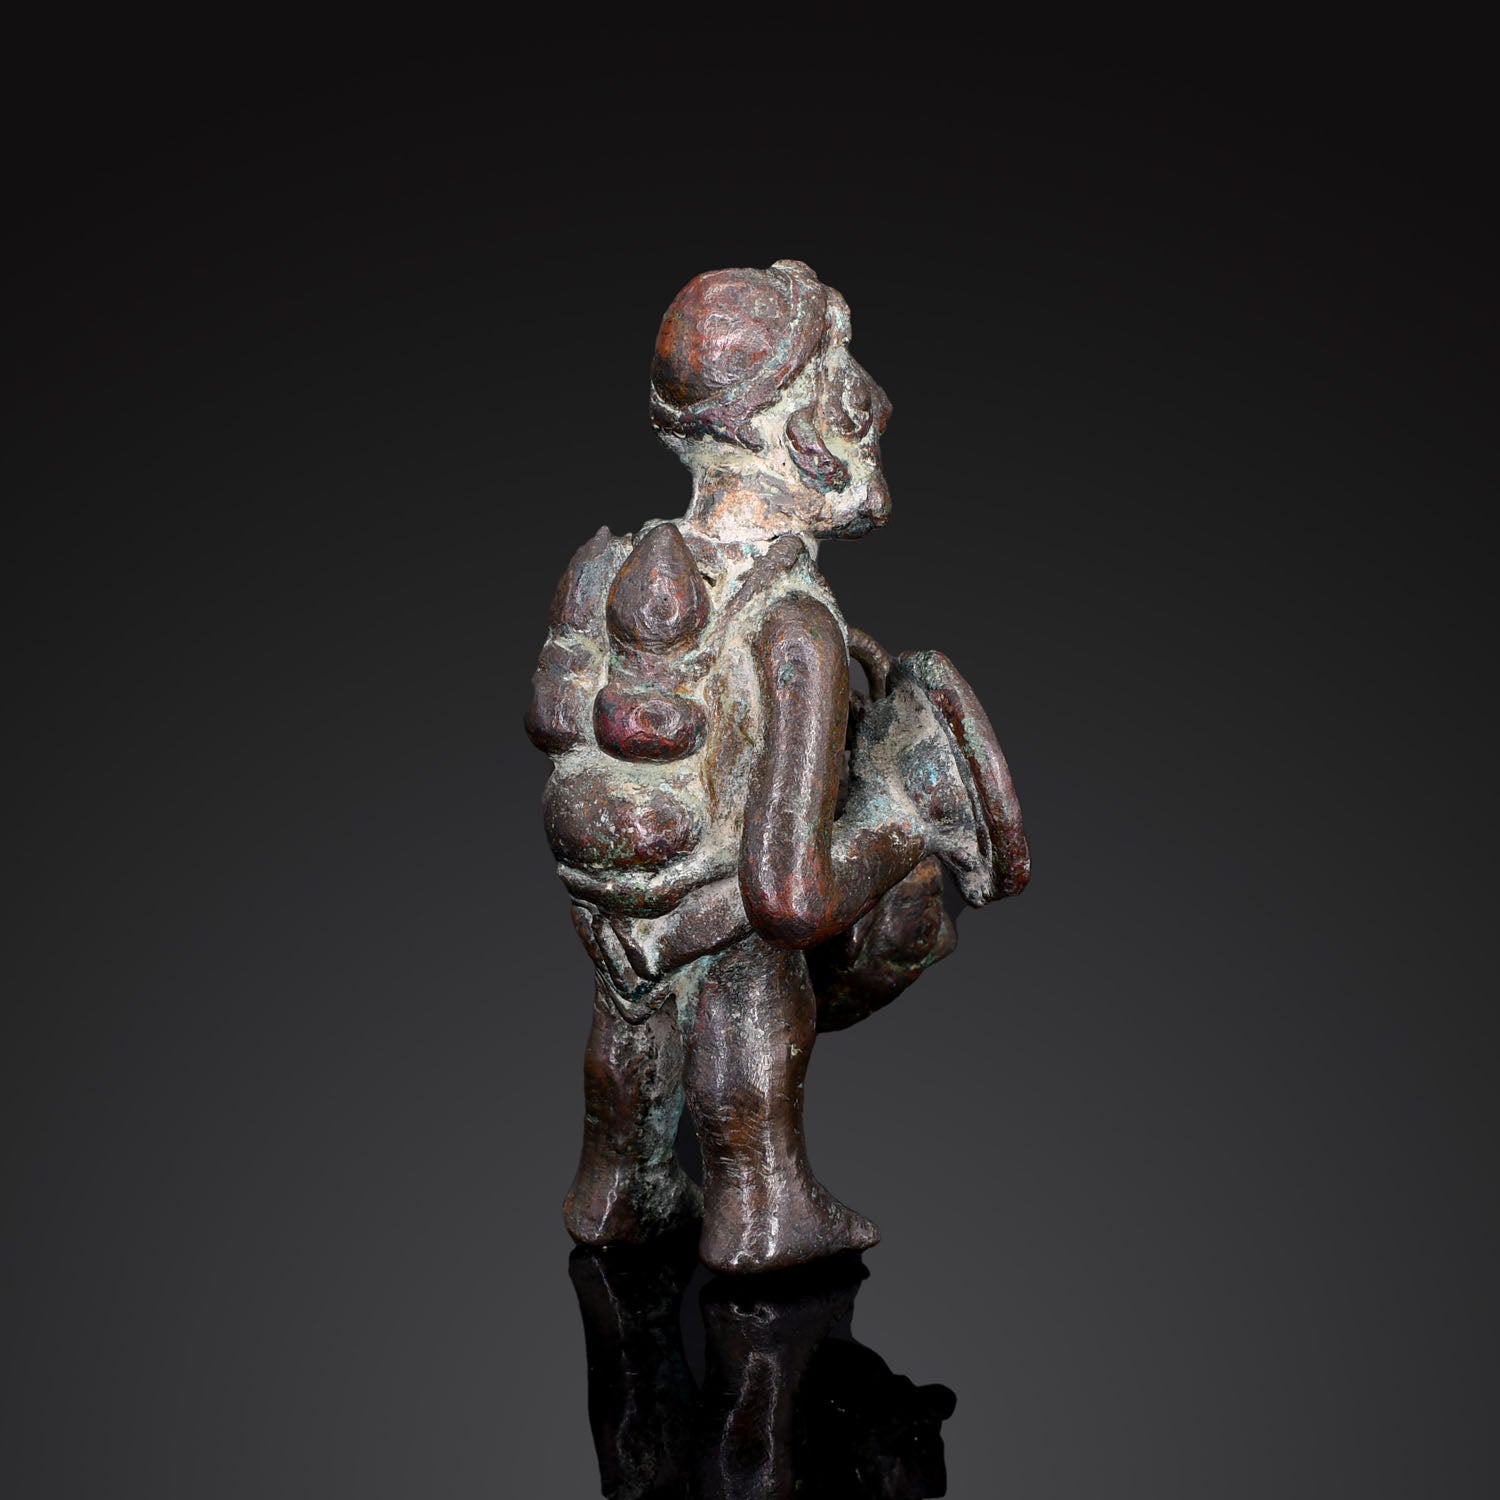 A Moche Solid Cast Copper Warrior Figure, ca. 500 - 800 CE